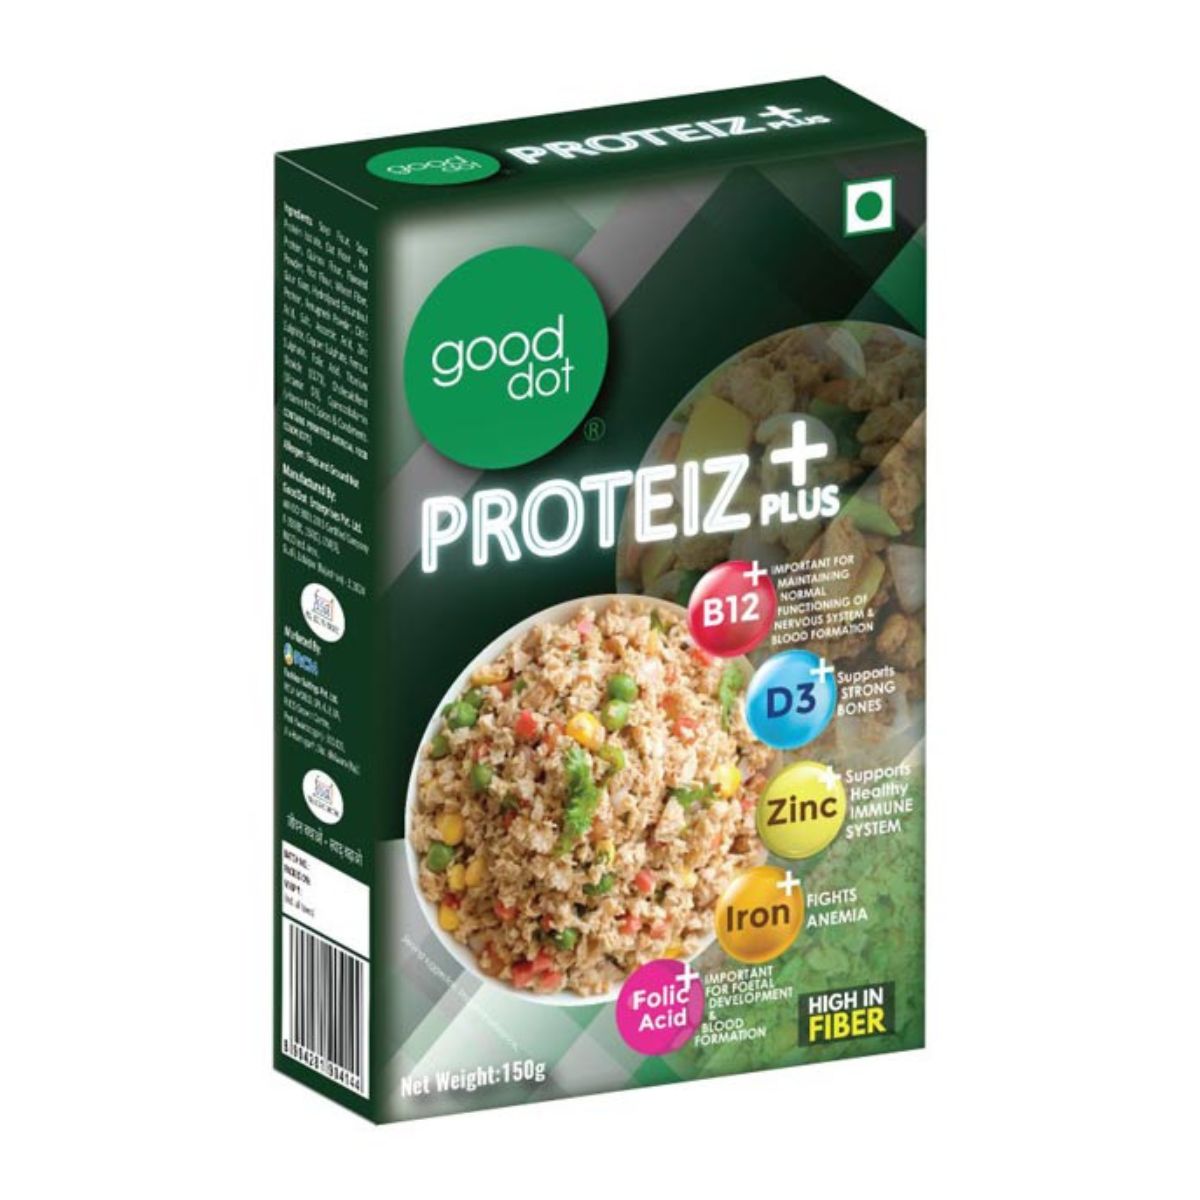 Good Dot - Proteiz Plus - Vegan Plant Based - 150g